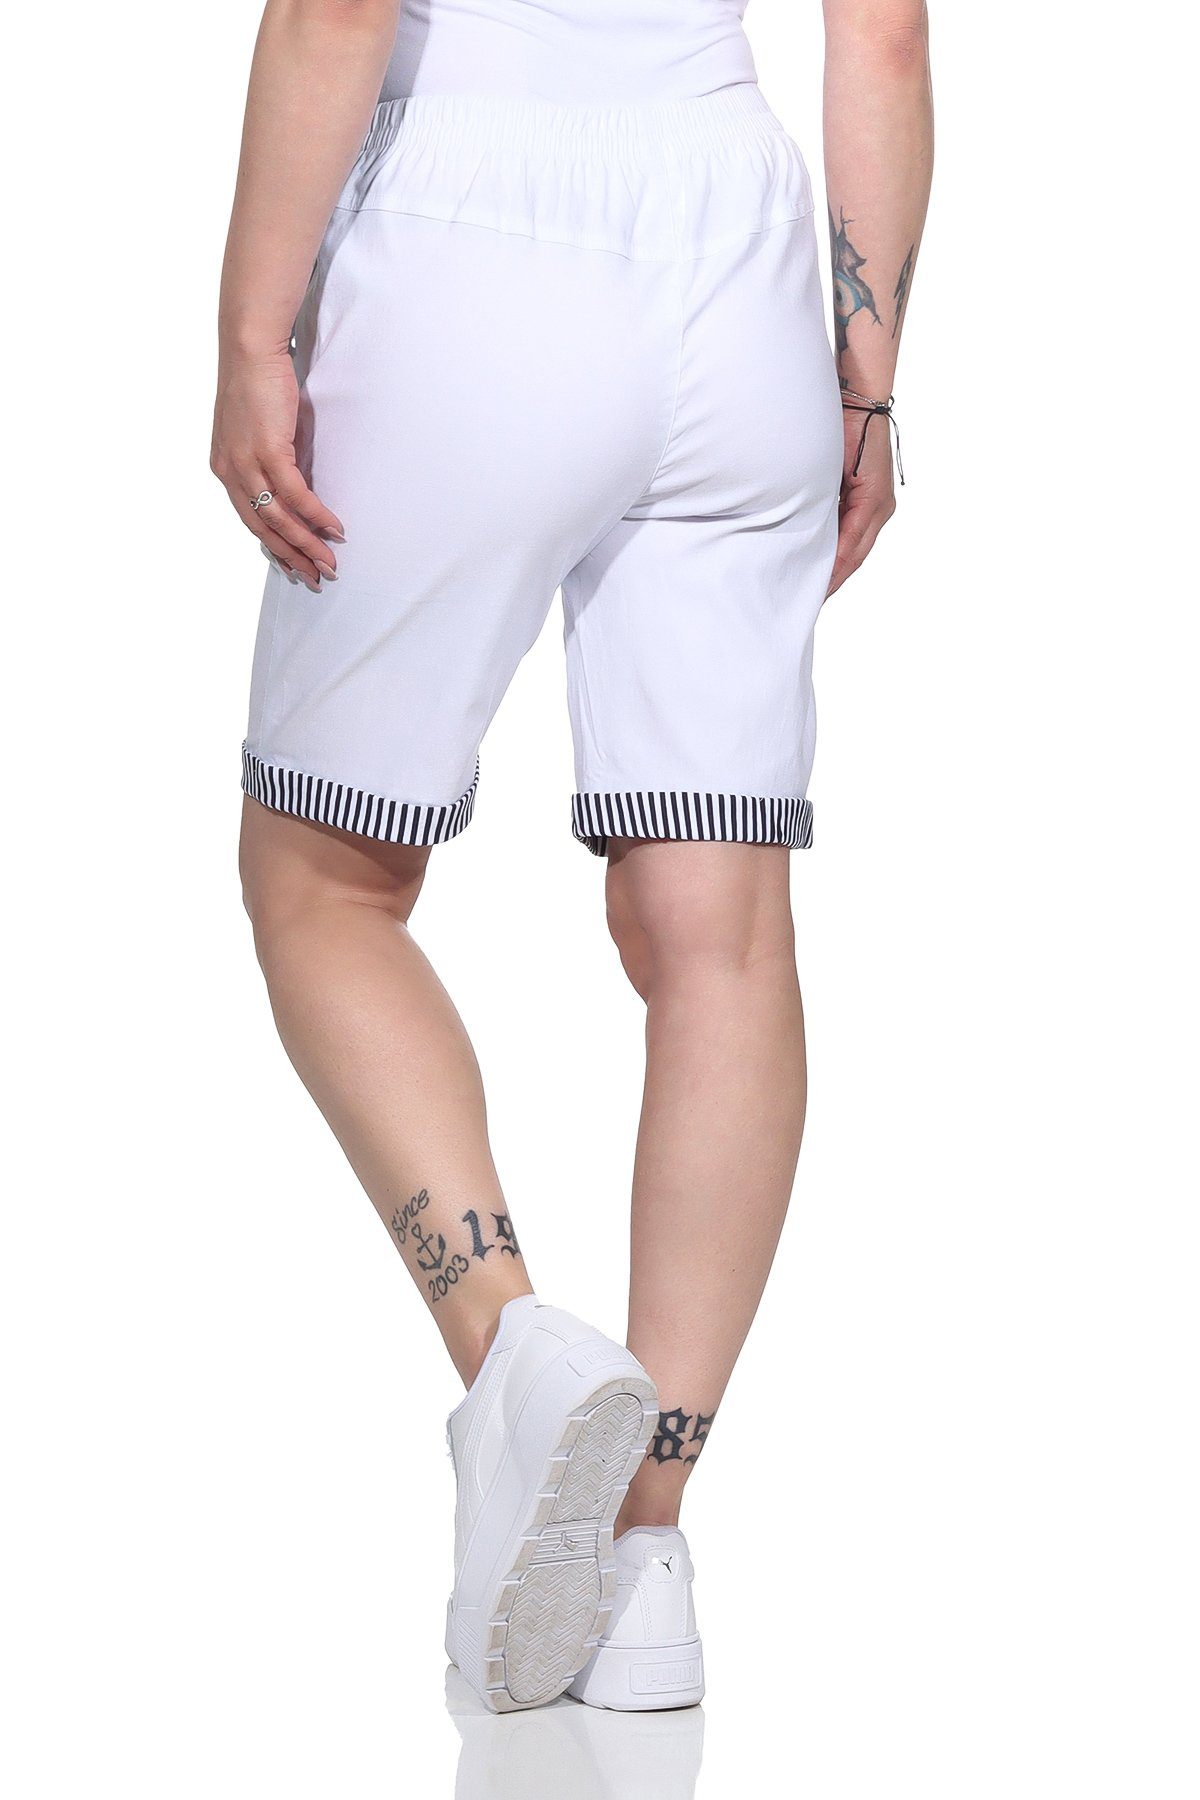 auch Maritime Bund, mit Damen in Bermuda Strandbermuda großen mit Details Sommer erhältlich, Aurela Größen Weiß Shorts maritimen Shorts elastischem Damenmode